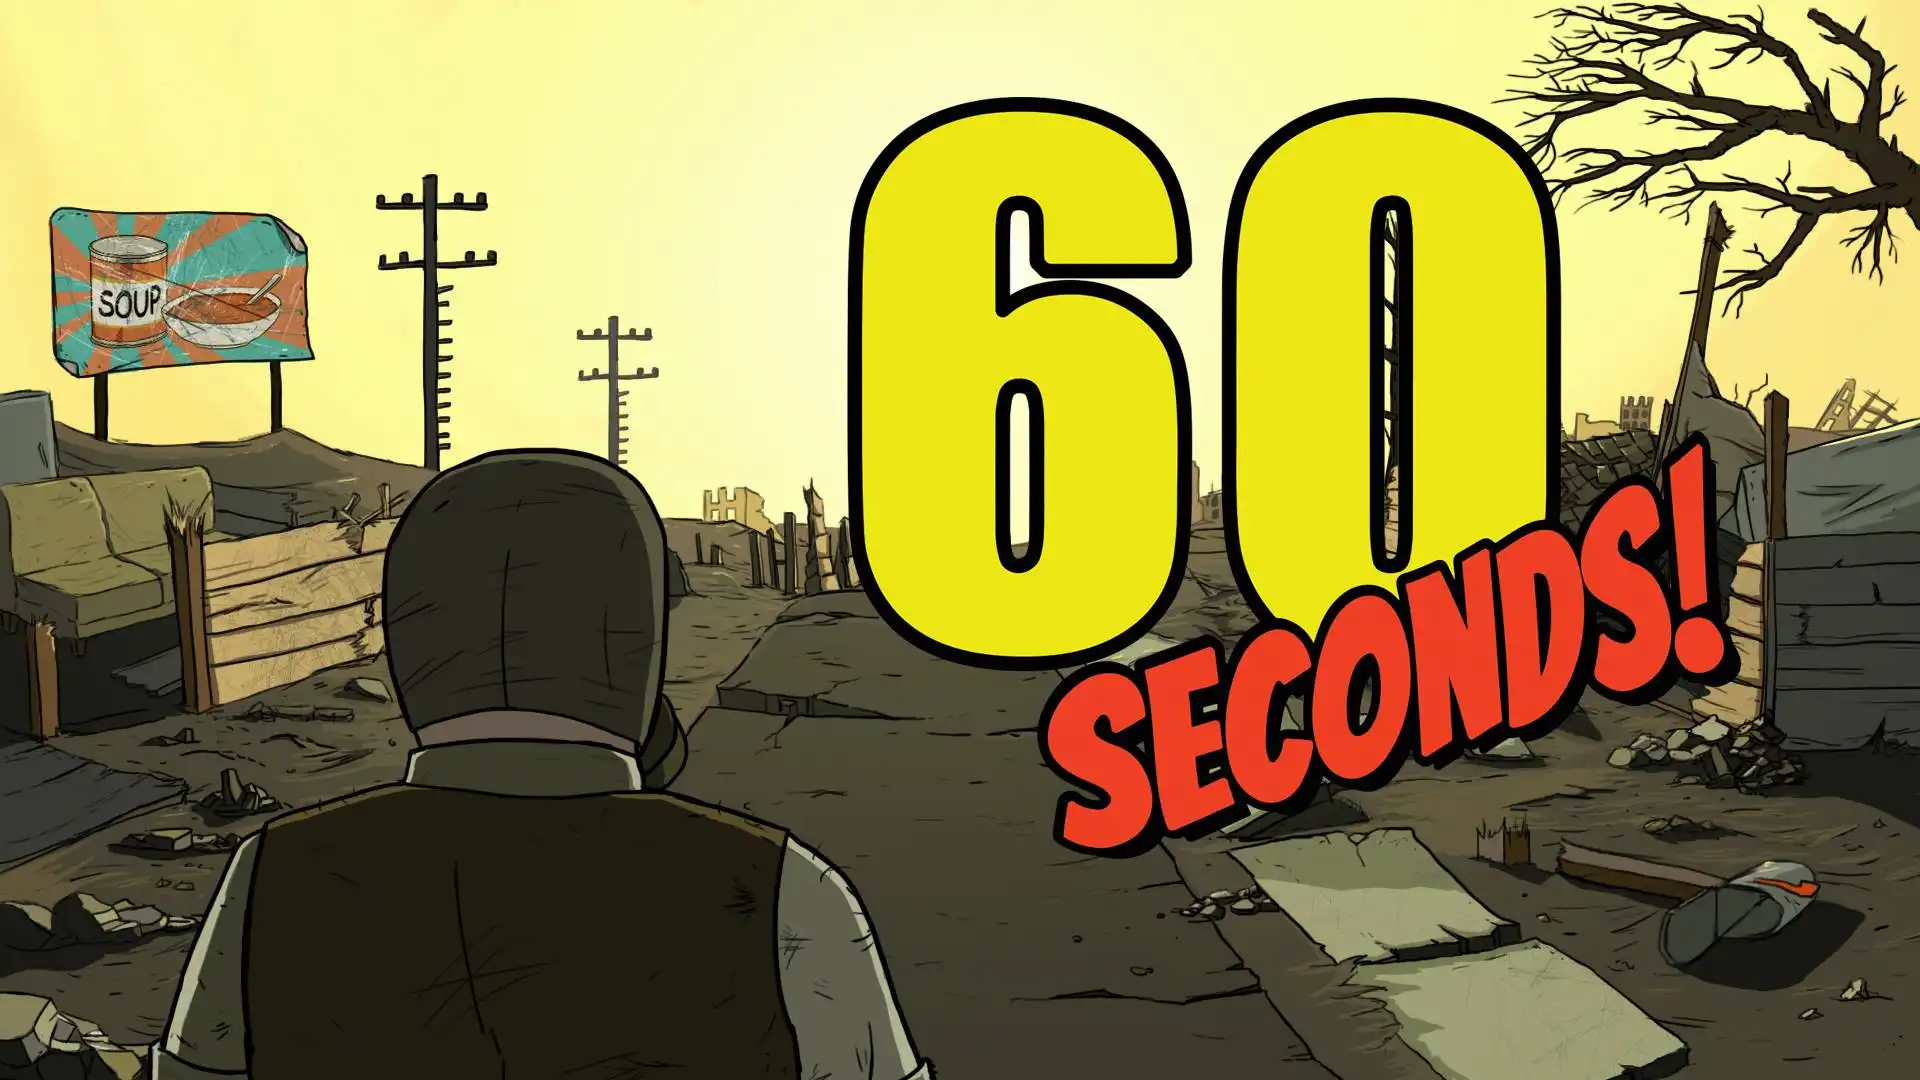 60 Seconds – выжить в бункере